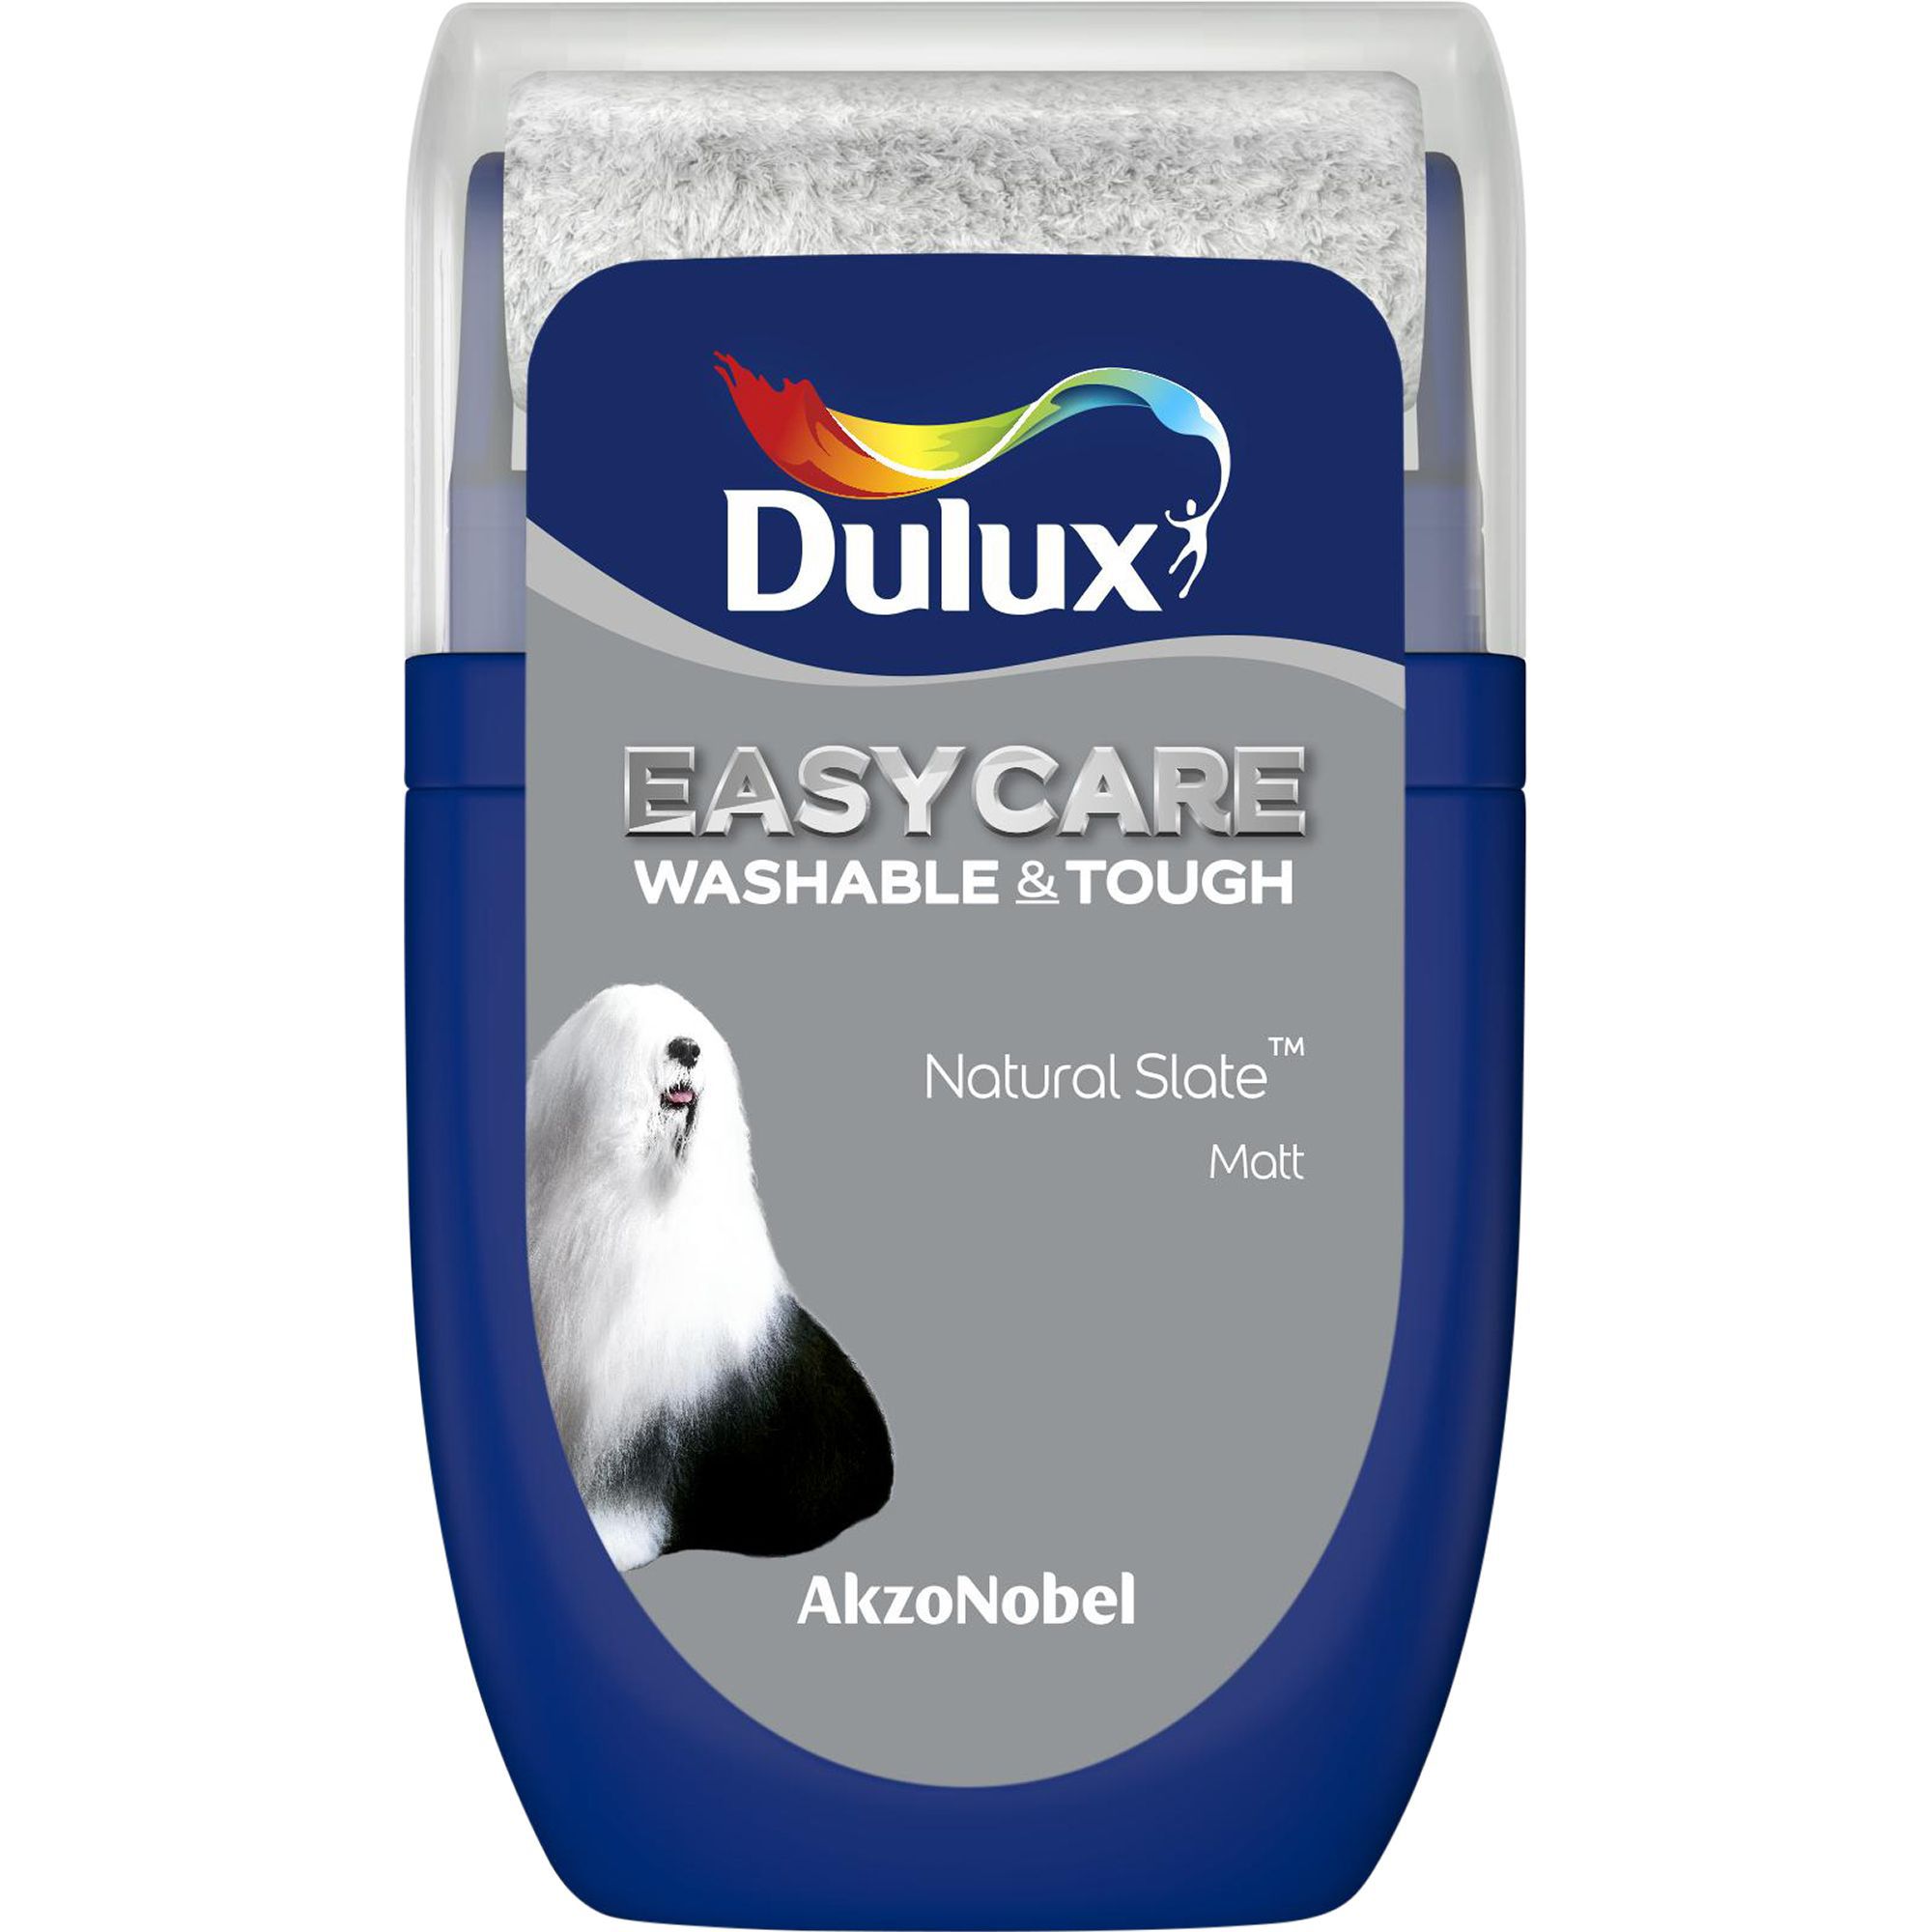 Dulux Easycare Natural slate Matt Emulsion paint, 30ml